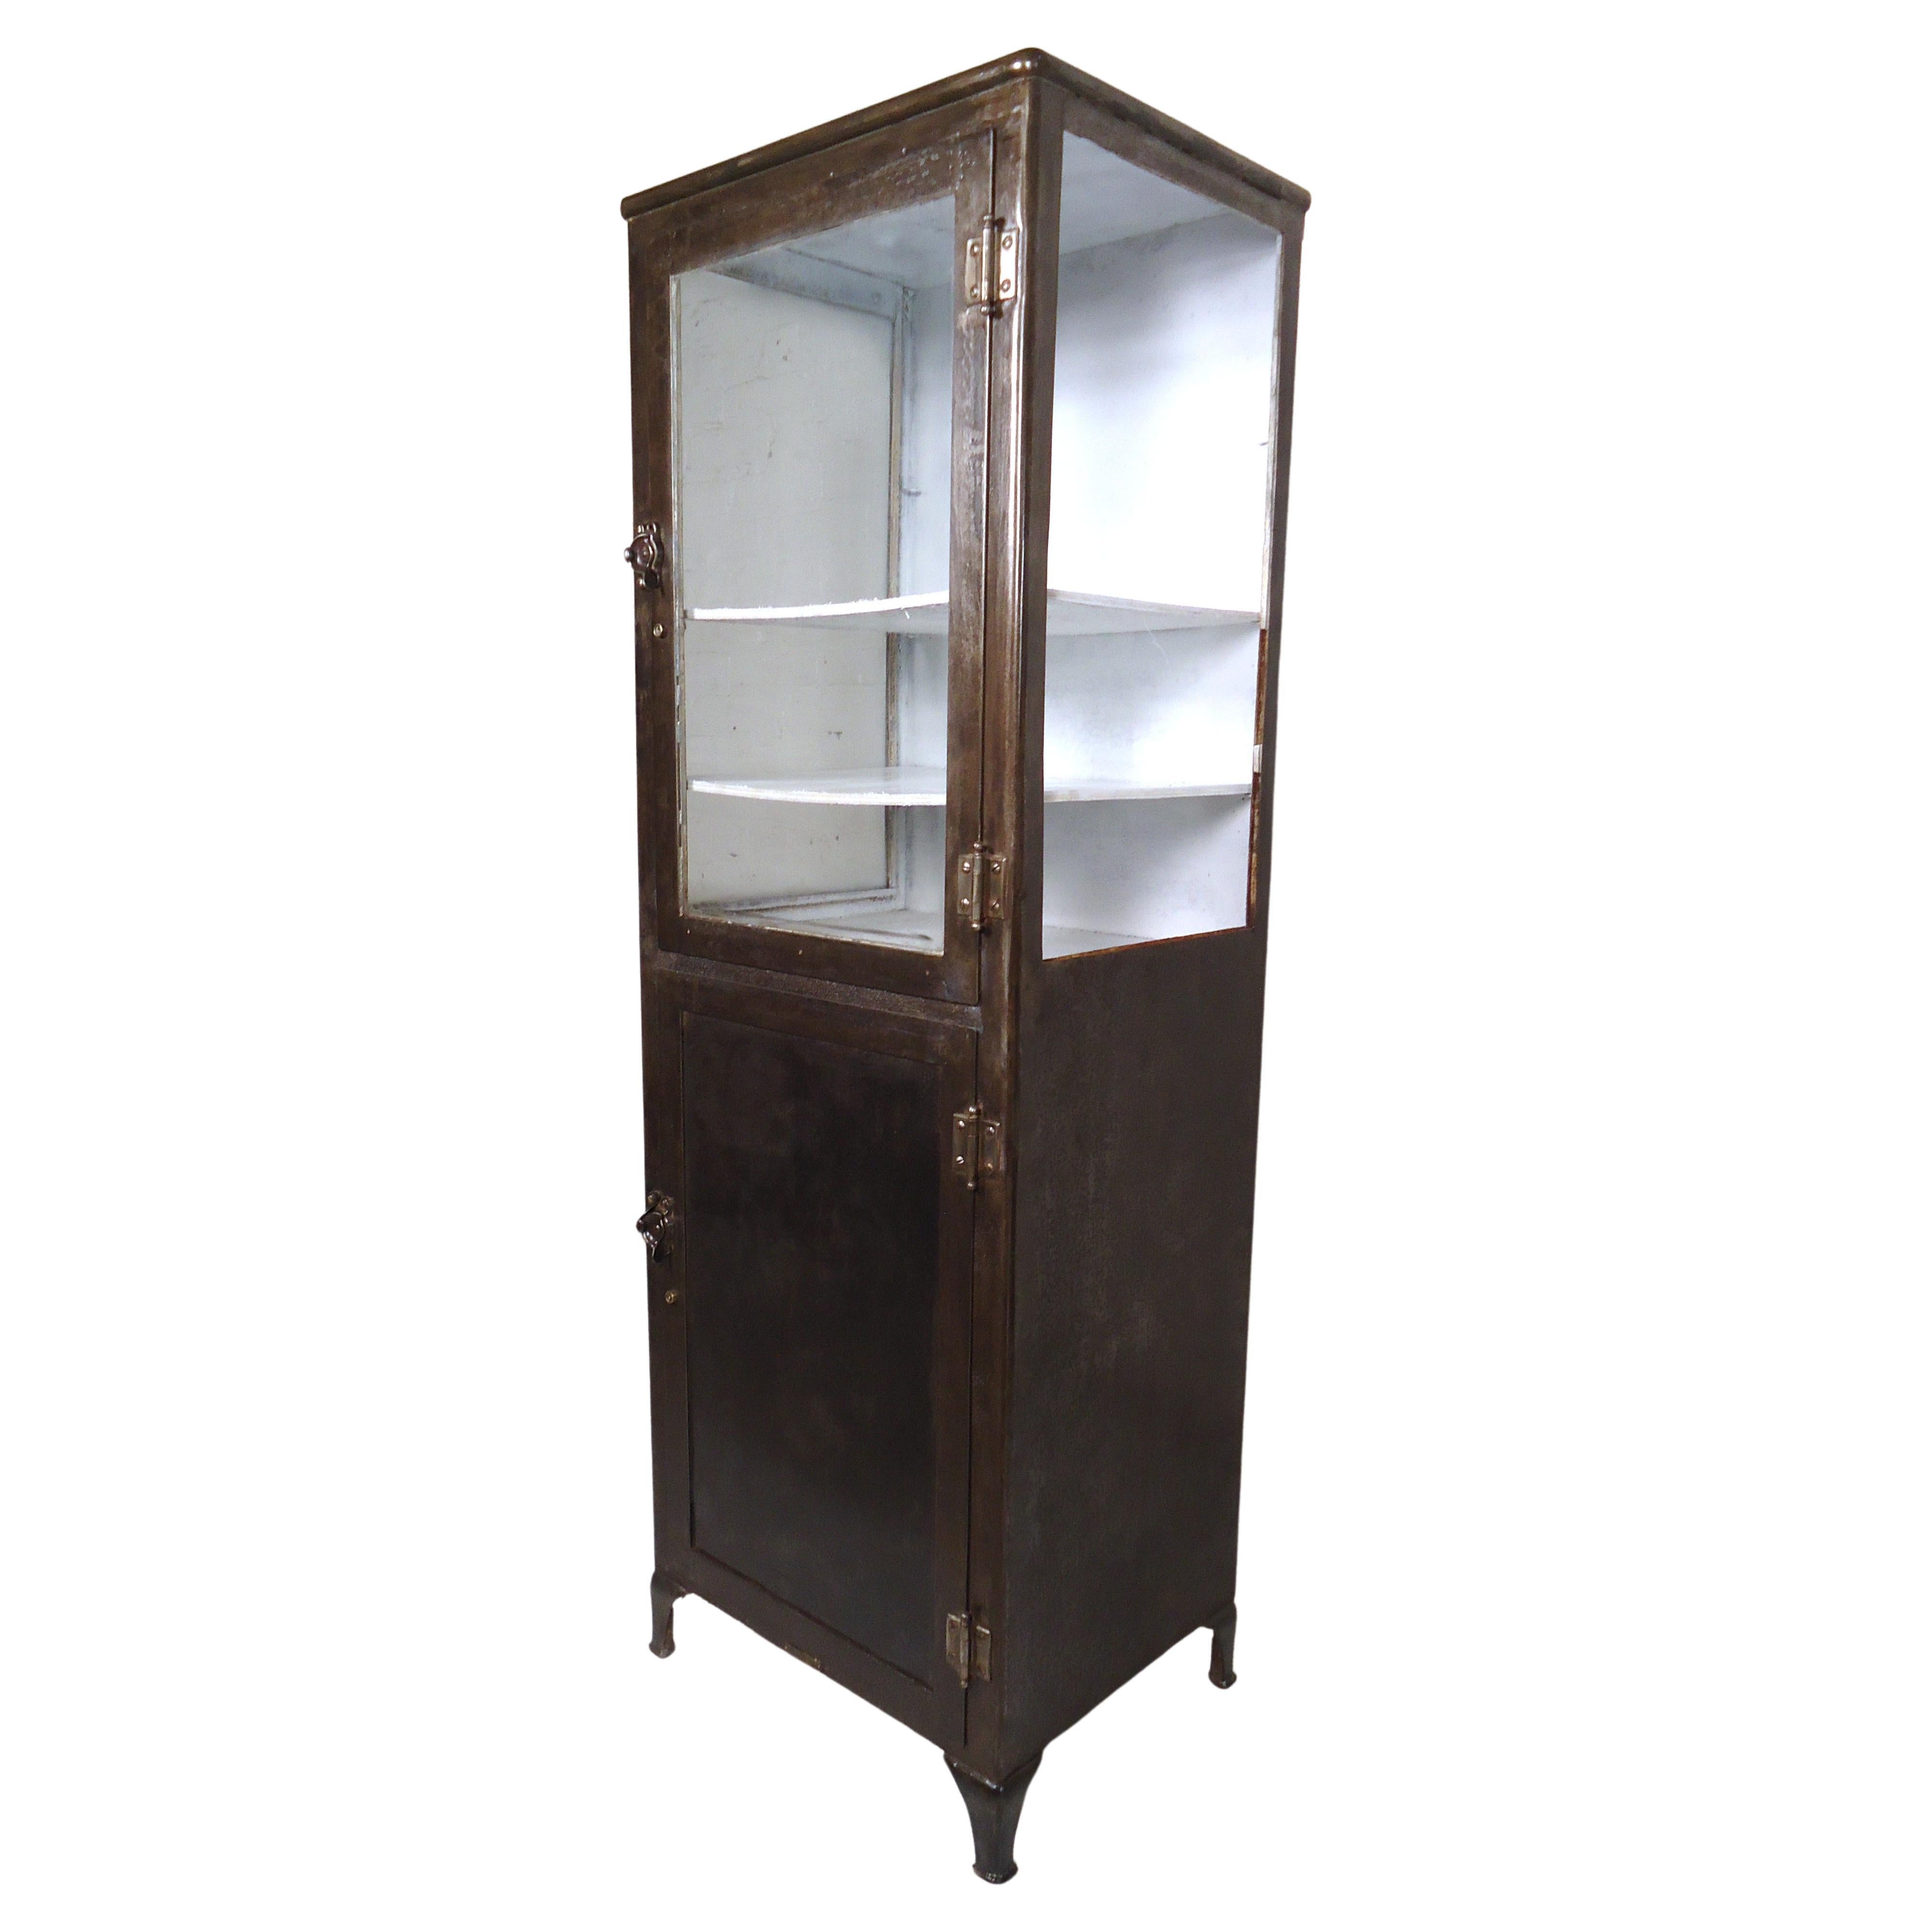 Restored Vintage Industrial Medical Cabinet